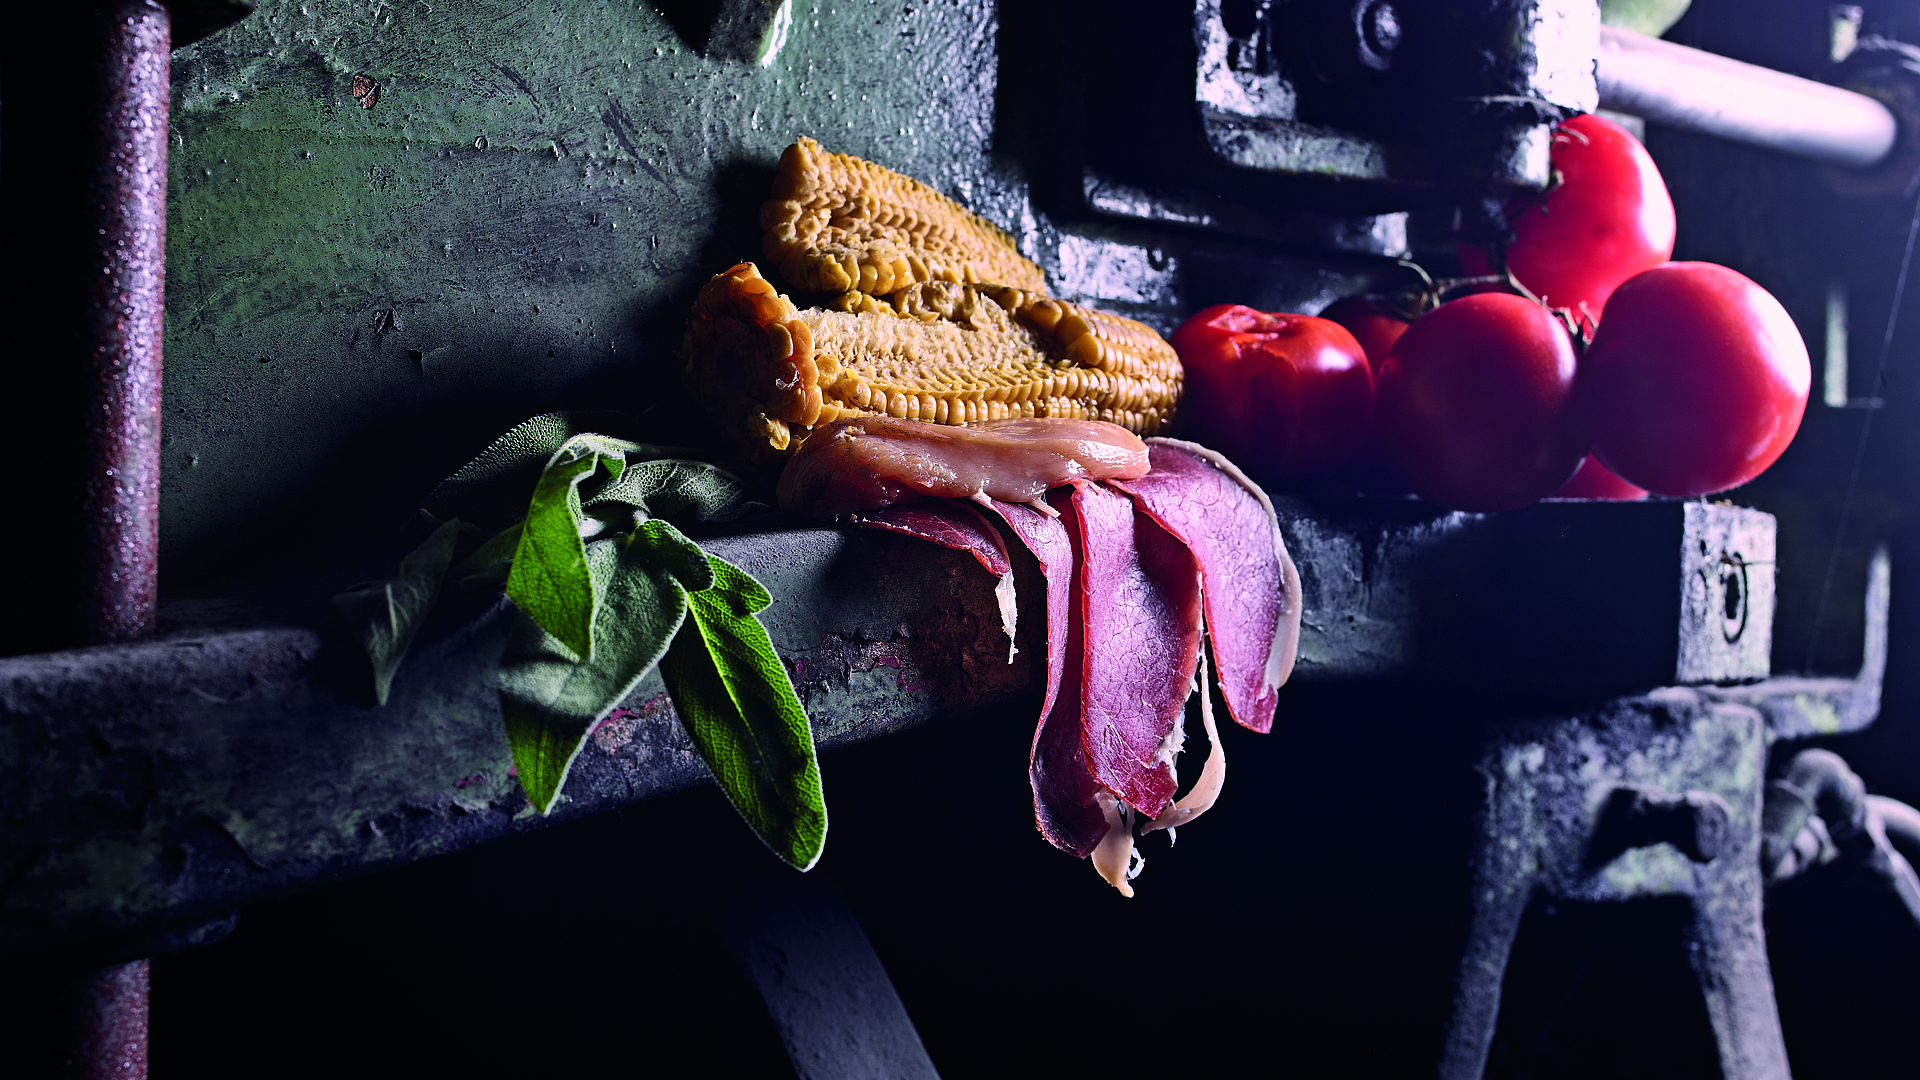 Veal tenderloin a la saltimbocca ingredients